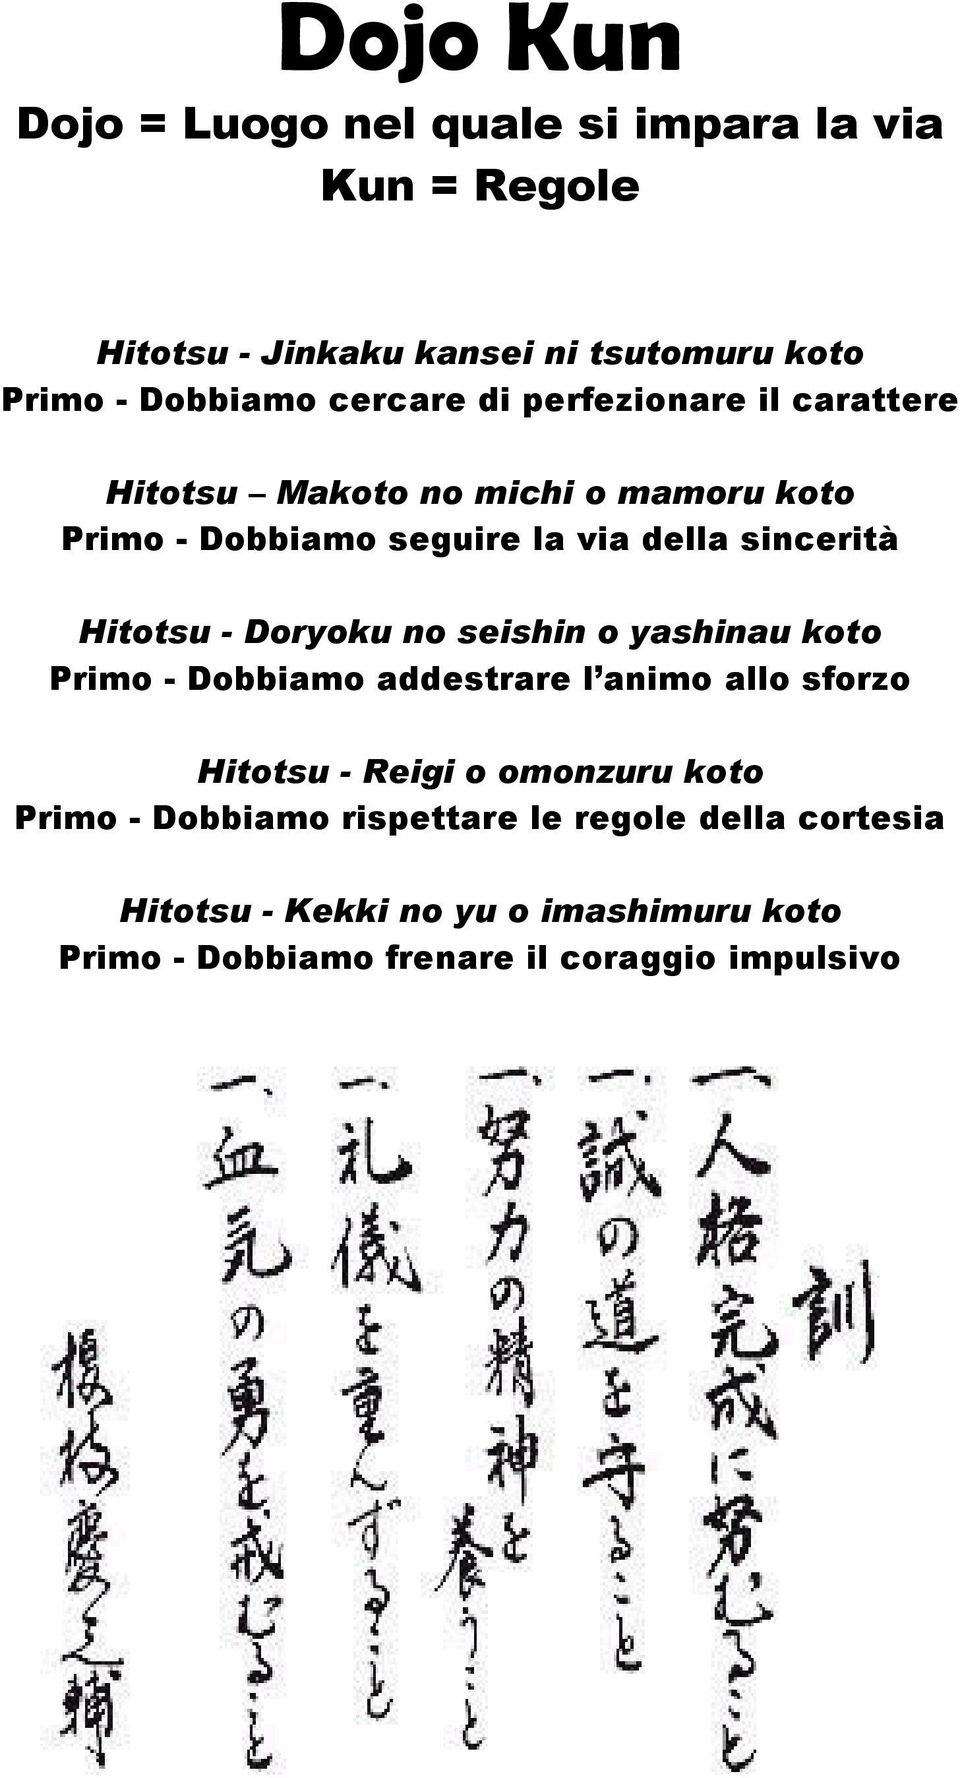 Hitotsu - Doryoku no seishin o yashinau koto Primo - Dobbiamo addestrare l animo allo sforzo Hitotsu - Reigi o omonzuru koto